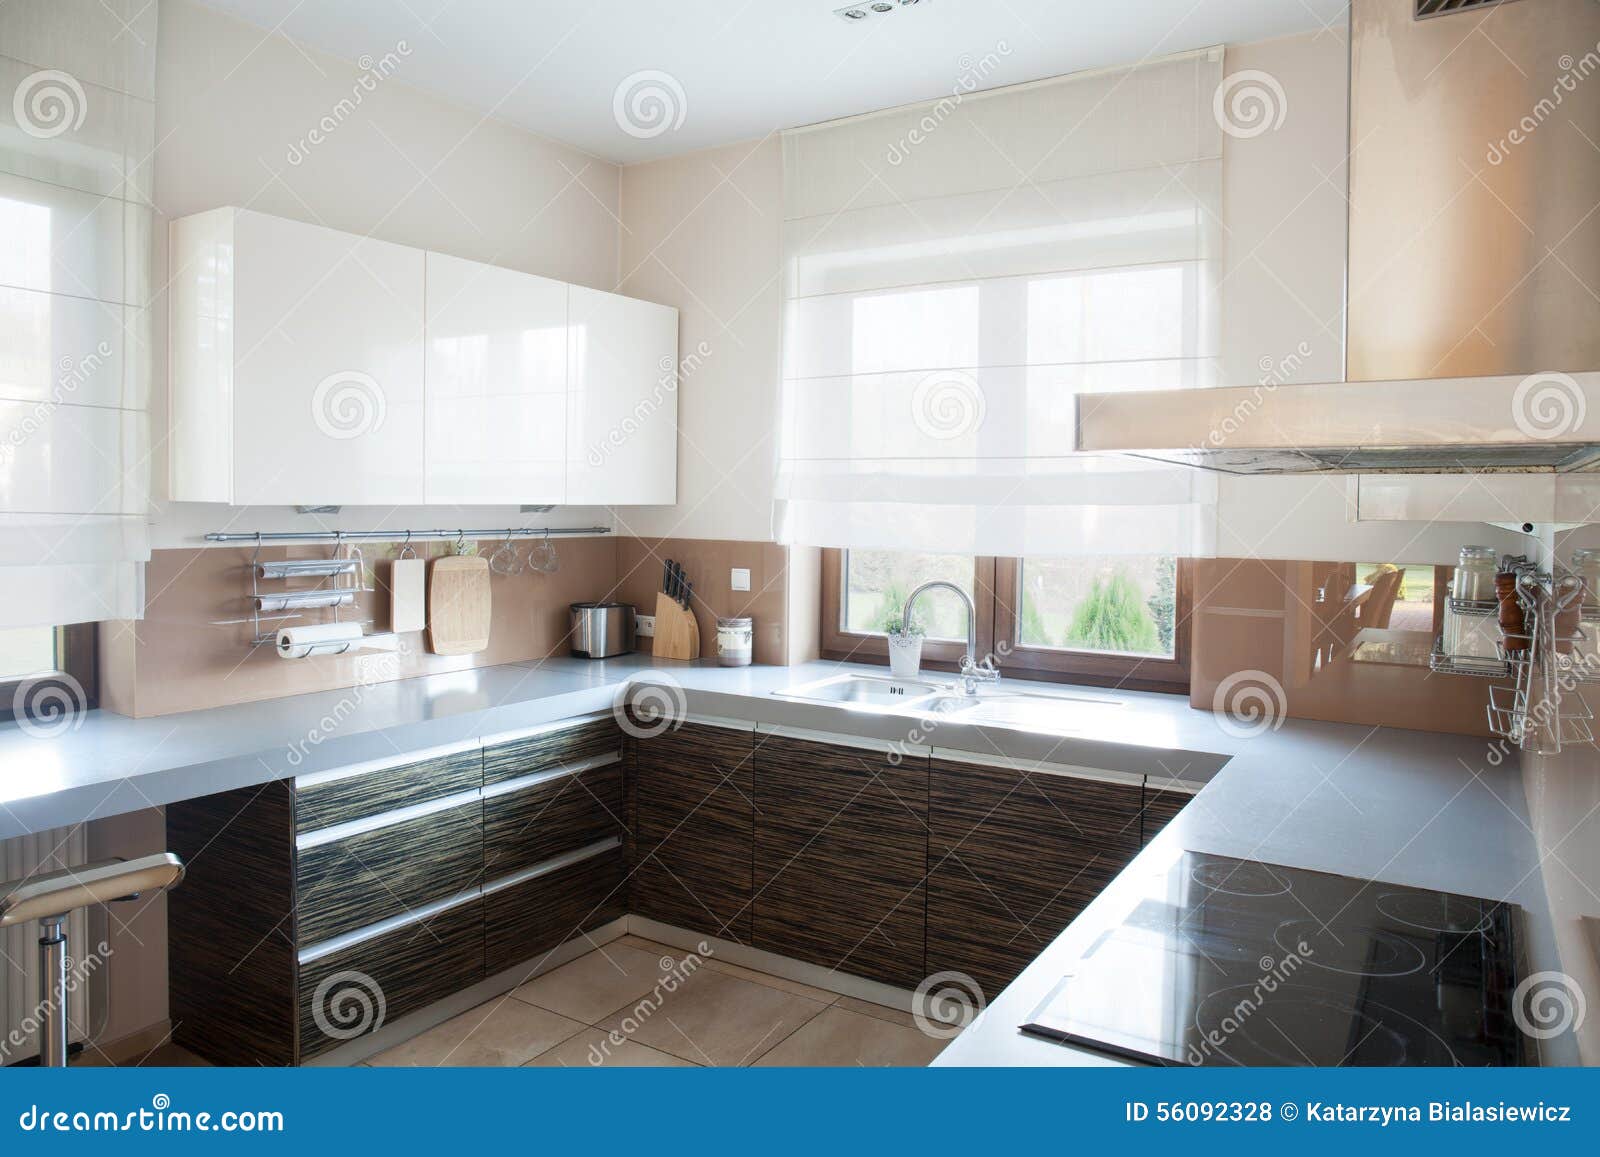 well-organized kitchen interior